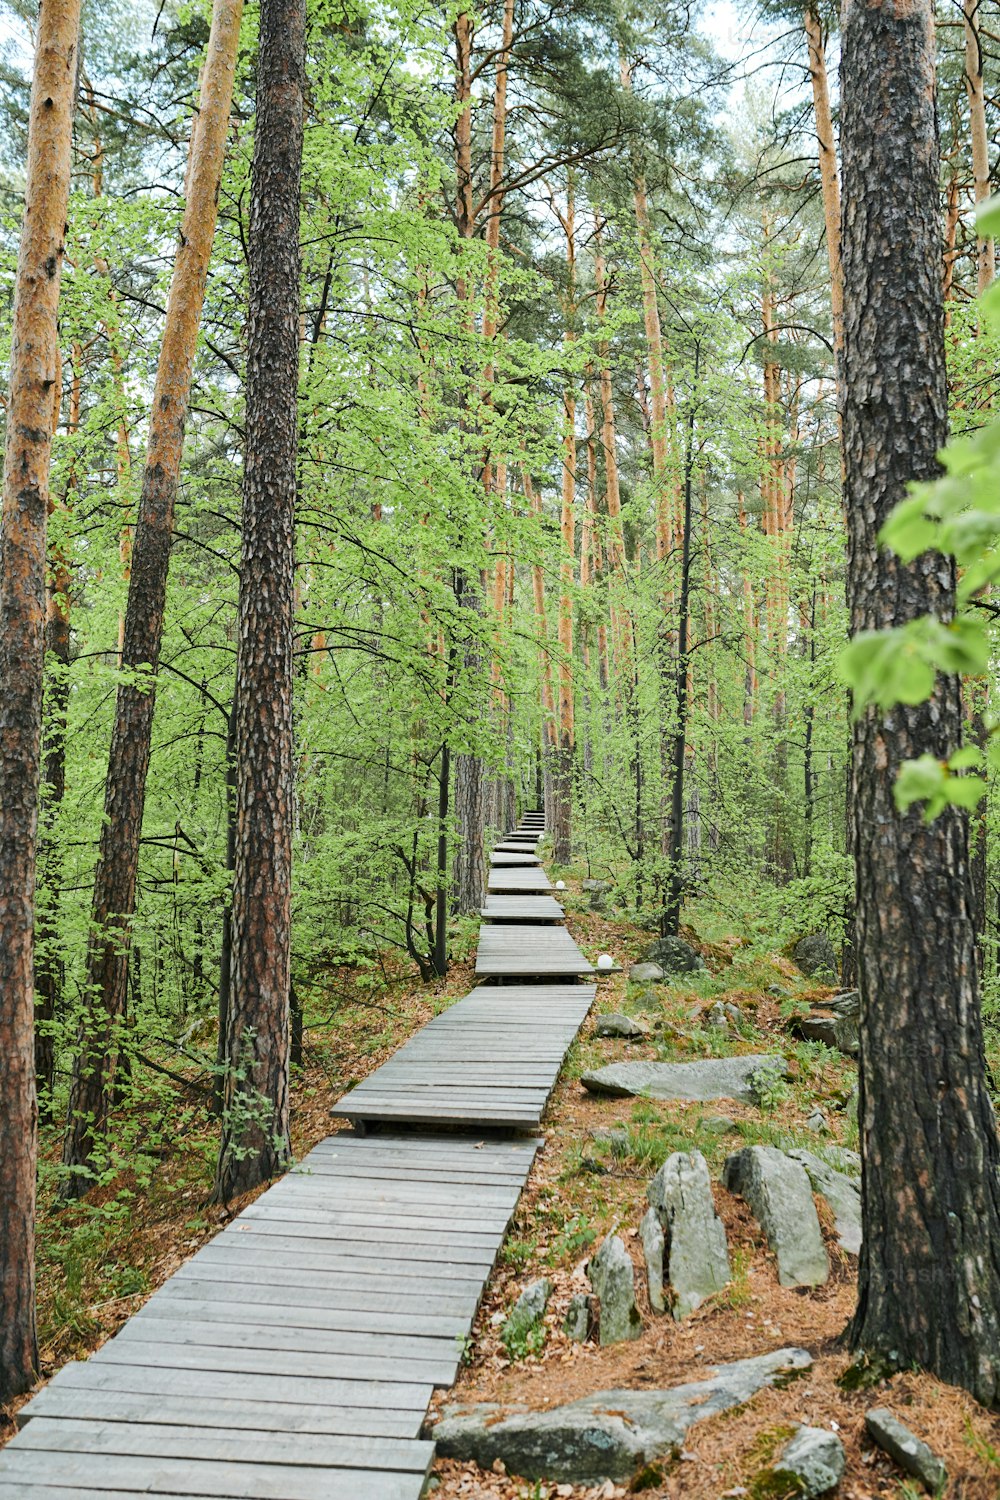 Long chemin dans la forêt composé de planches de bois entourées de pins et de pierres un jour d’été